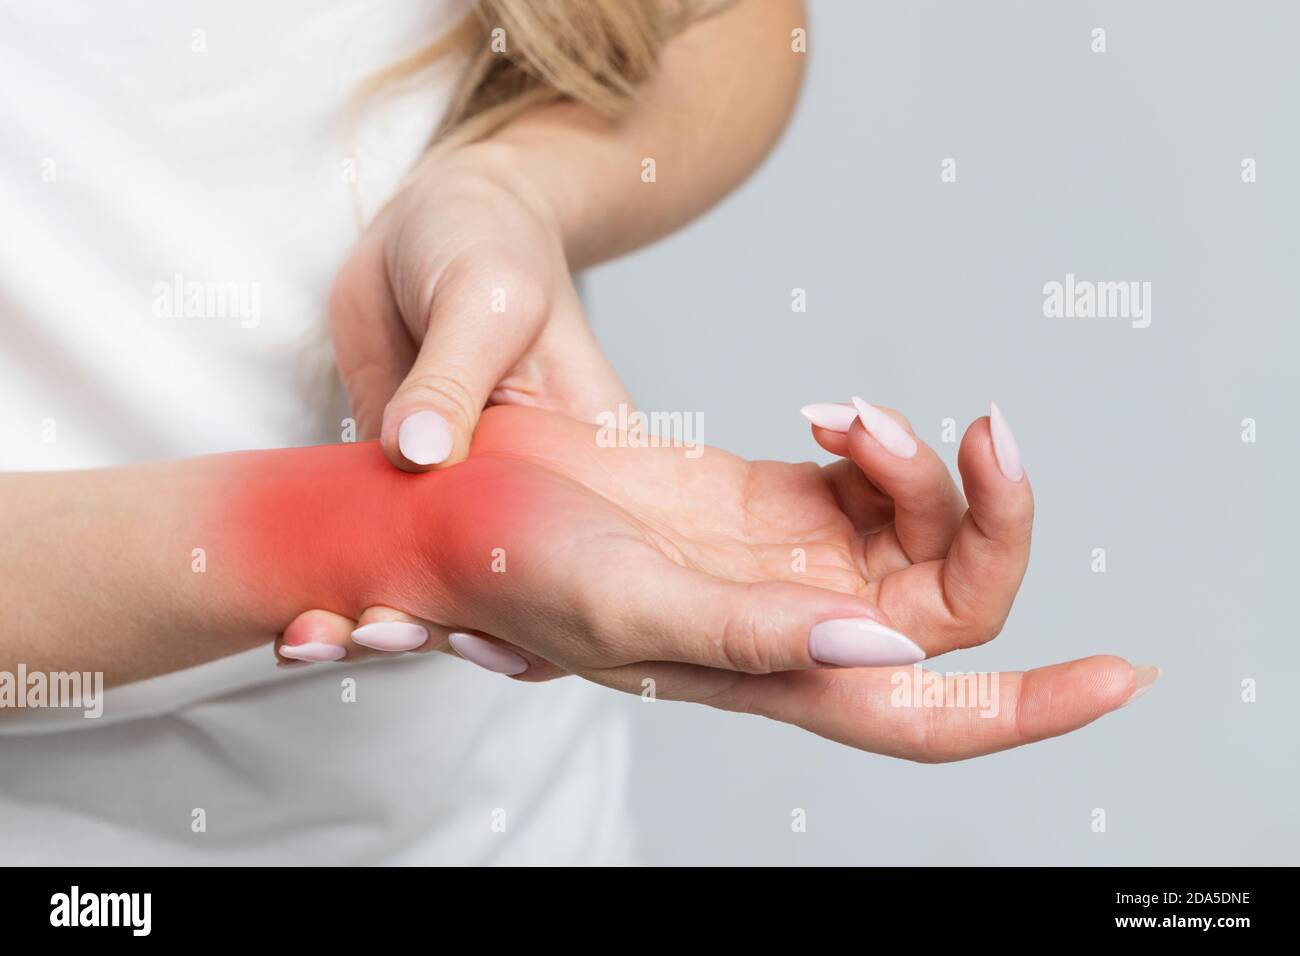 Closeup del braccio femminile che tiene il suo polso doloroso causato da lavoro prolungato sul computer, laptop / sindrome del tunnel carpale, artrite, malattie neurologiche Foto Stock